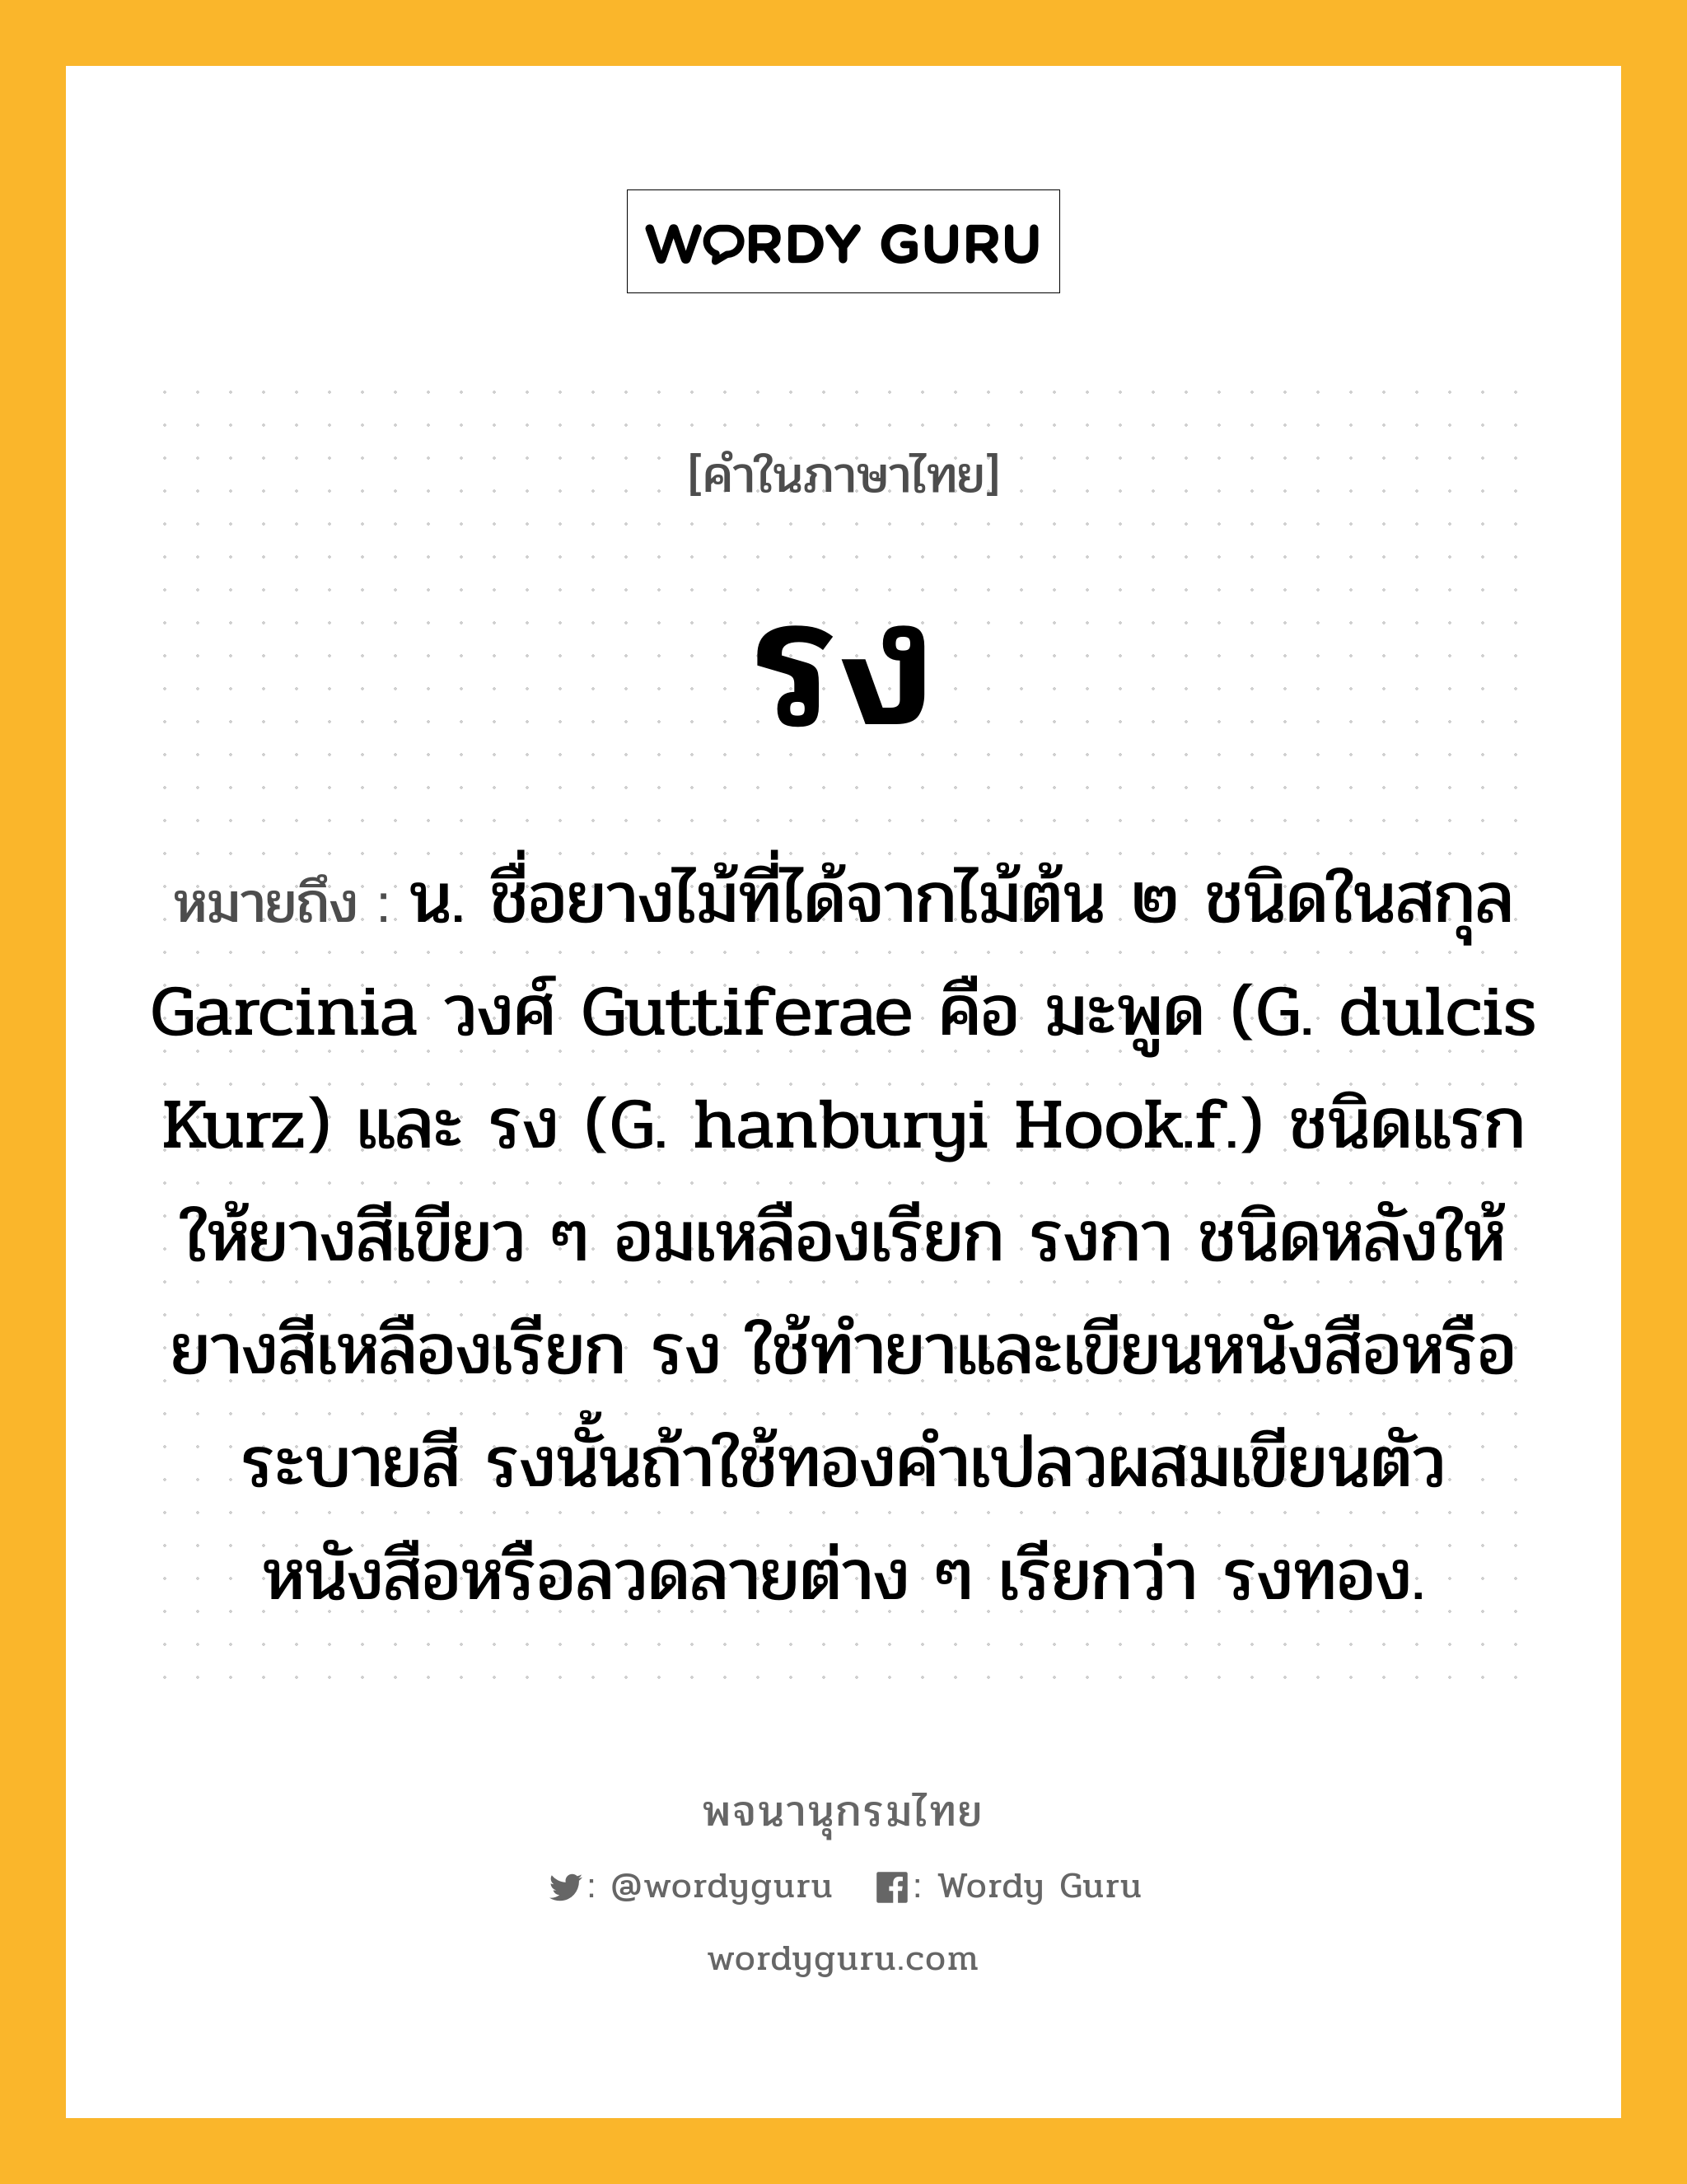 รง ความหมาย หมายถึงอะไร?, คำในภาษาไทย รง หมายถึง น. ชื่อยางไม้ที่ได้จากไม้ต้น ๒ ชนิดในสกุล Garcinia วงศ์ Guttiferae คือ มะพูด (G. dulcis Kurz) และ รง (G. hanburyi Hook.f.) ชนิดแรกให้ยางสีเขียว ๆ อมเหลืองเรียก รงกา ชนิดหลังให้ยางสีเหลืองเรียก รง ใช้ทำยาและเขียนหนังสือหรือระบายสี รงนั้นถ้าใช้ทองคำเปลวผสมเขียนตัวหนังสือหรือลวดลายต่าง ๆ เรียกว่า รงทอง.